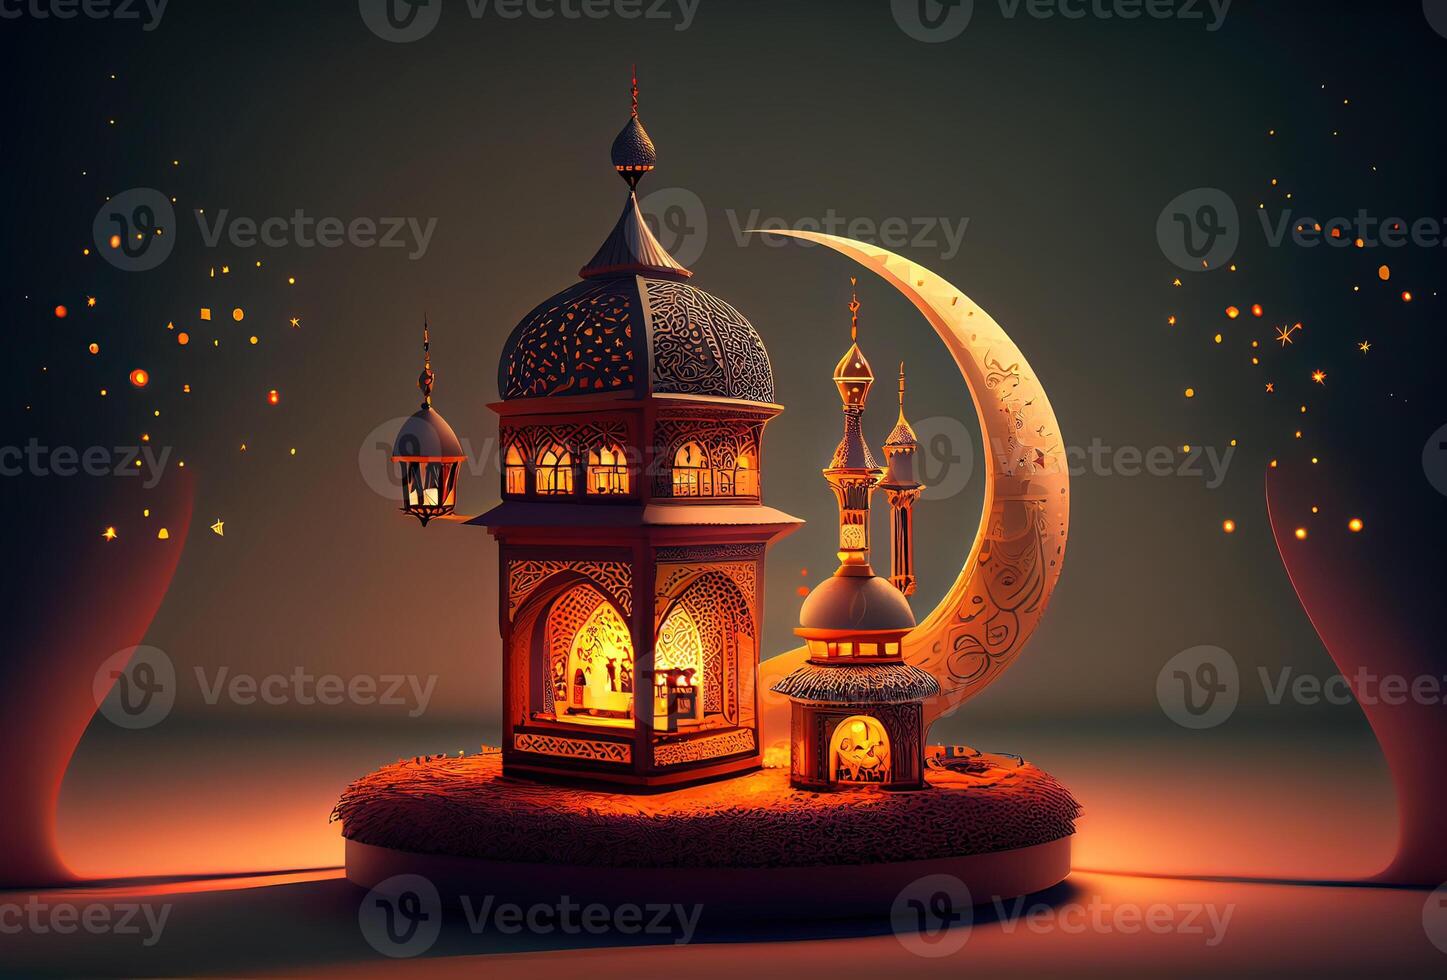 generativ ai illustration av islamic Semester. ramadan natt. moské och lykta visas på stadier med lysande ljus i de kväll. tapet och baner bakgrund. foto